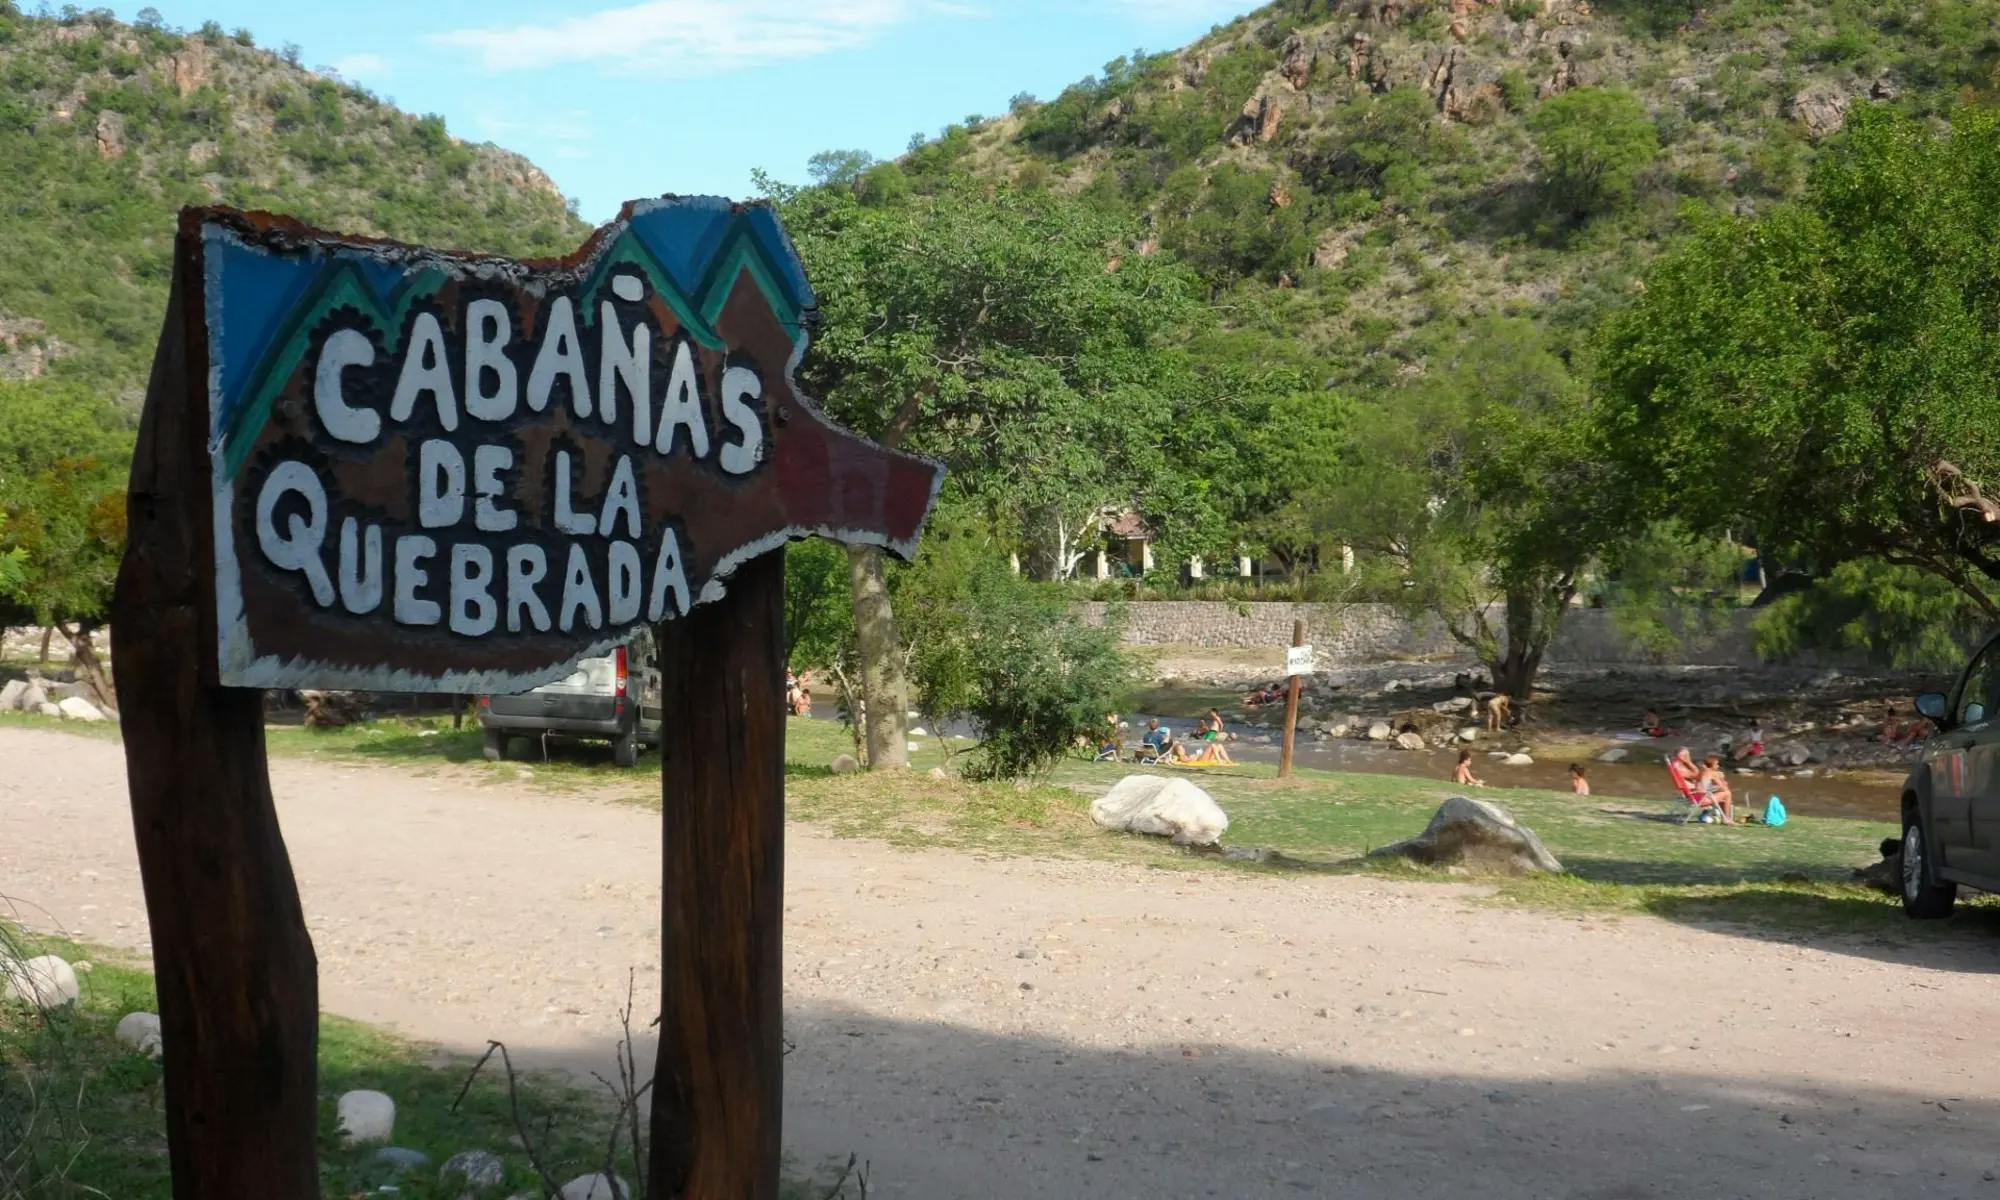 Imagen de Cabañas de la Quebrada